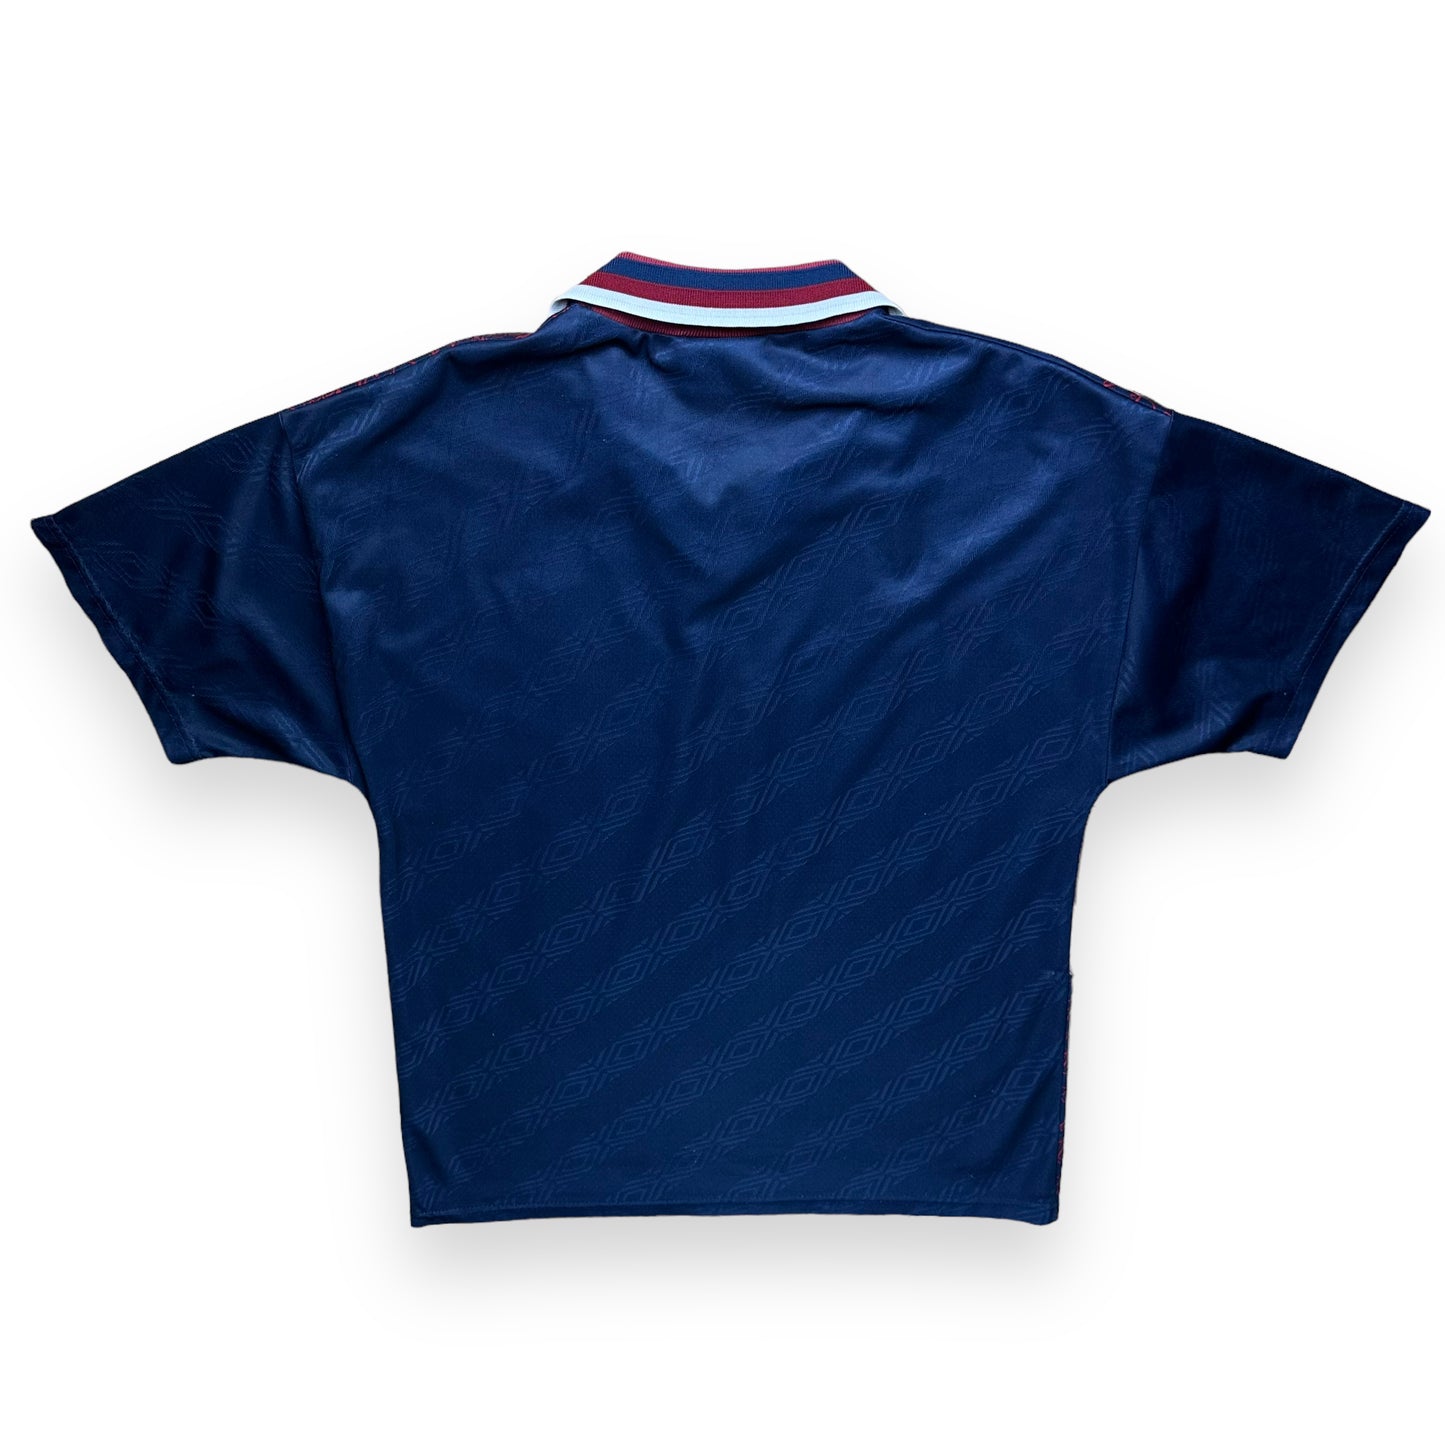 Ajax 1994-95 Away Shirt (M)